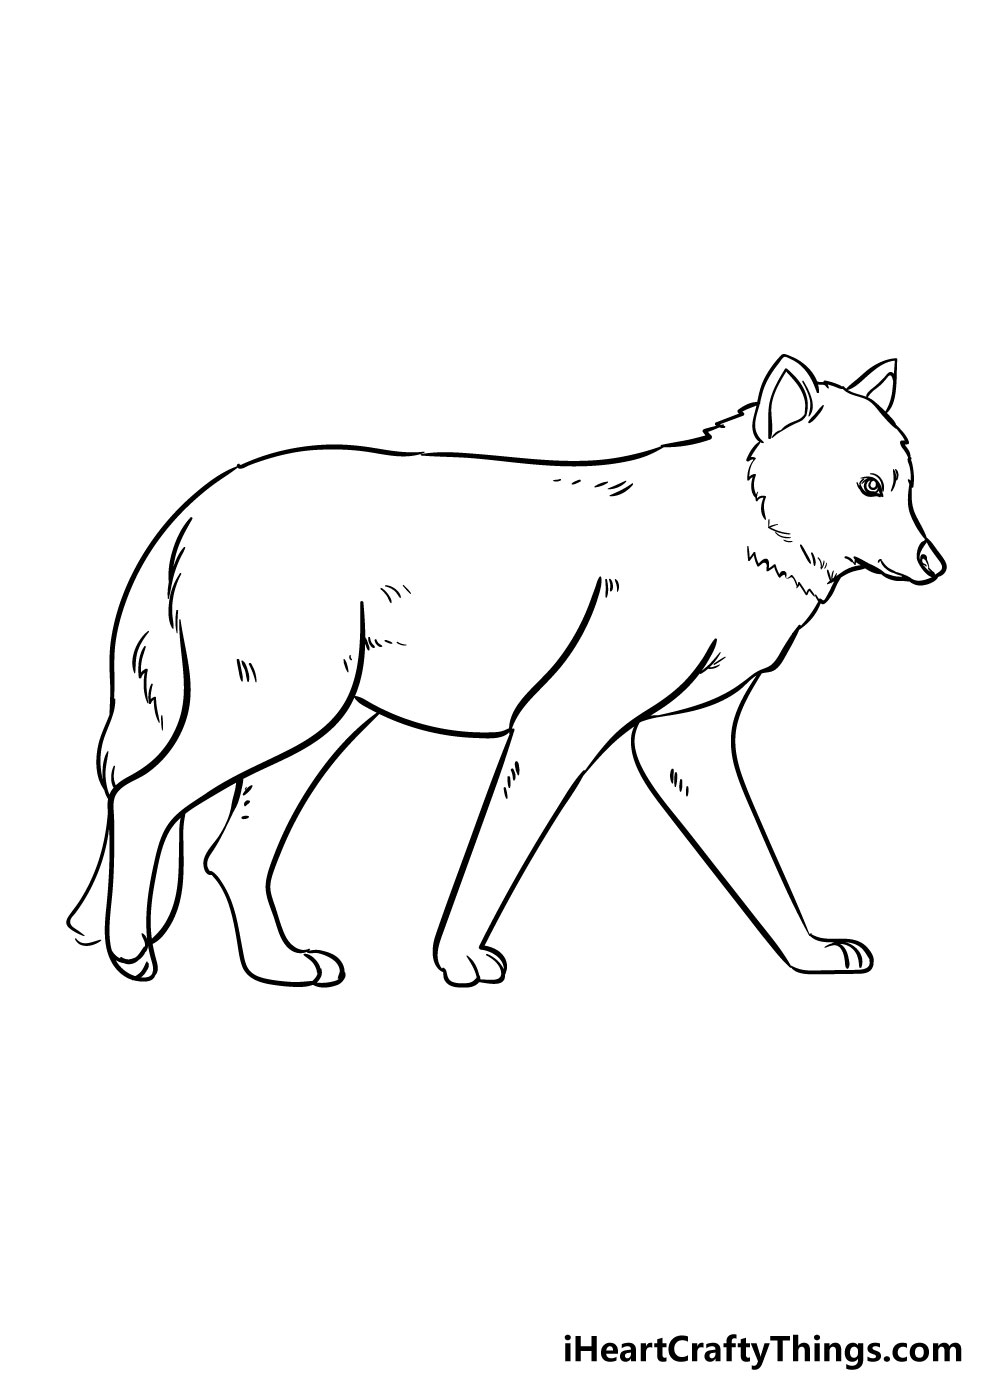 Xem hơn 100 ảnh về hình vẽ sói đẹp - daotaonec